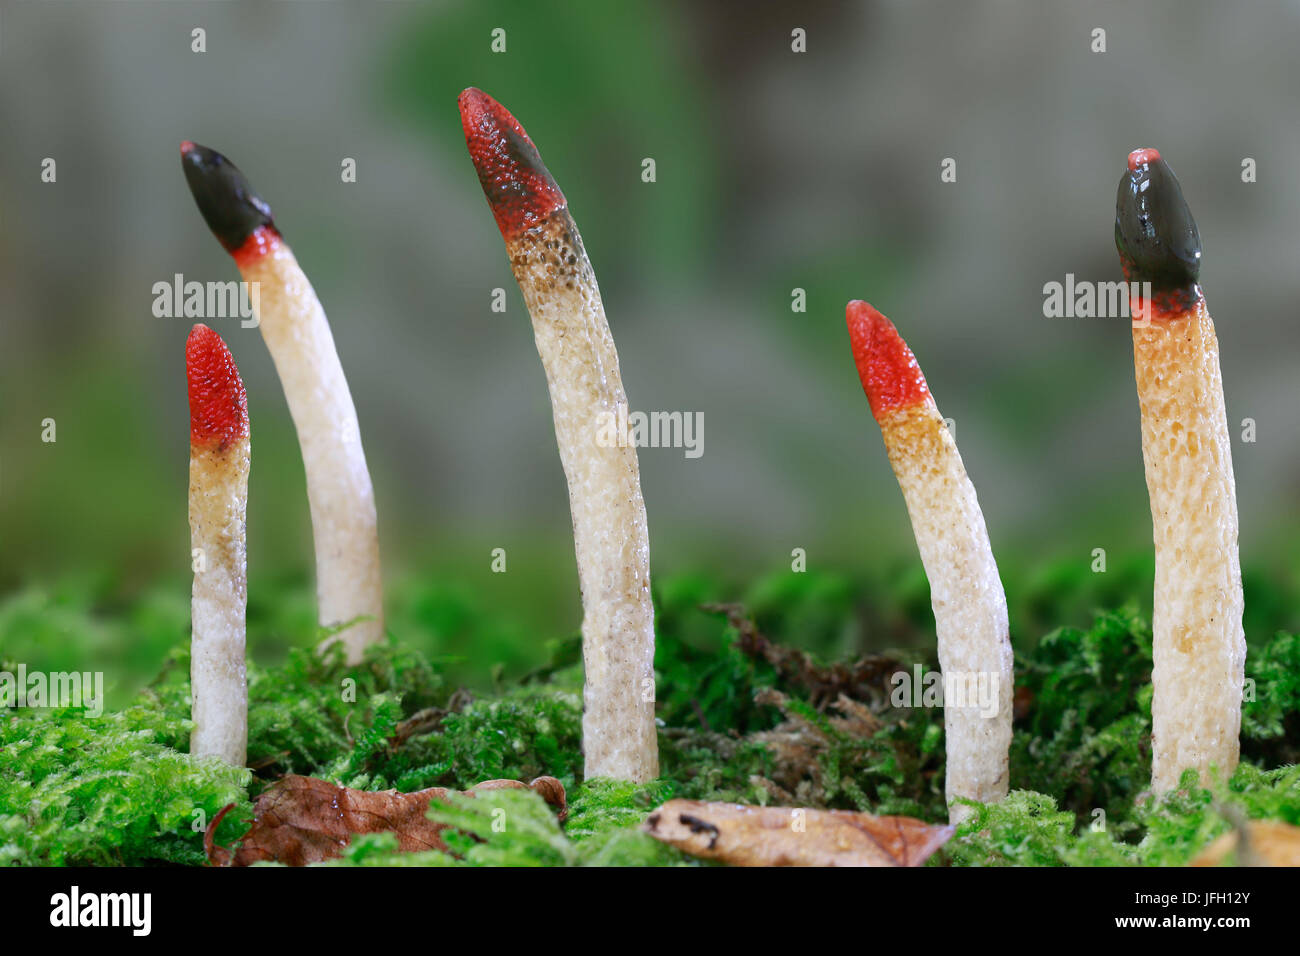 Common dog rods, fungus, Mutinus caninus, Stock Photo